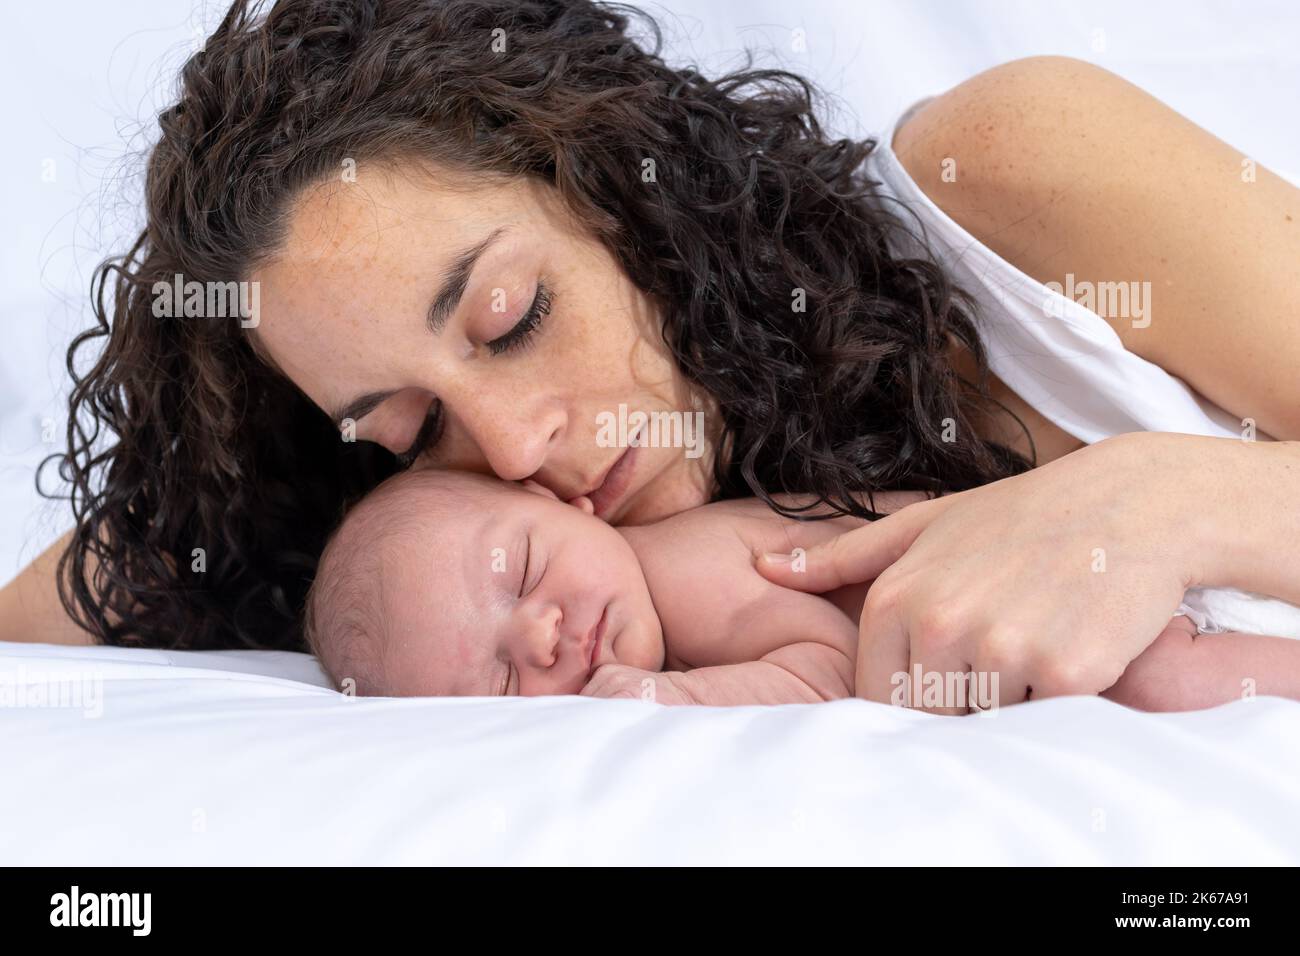 la mère prend le dessus et regarde son nouveau-né pendant qu'elle dort et repose sur le lit dans la chambre. Fond blanc. Famille et affection concept Banque D'Images